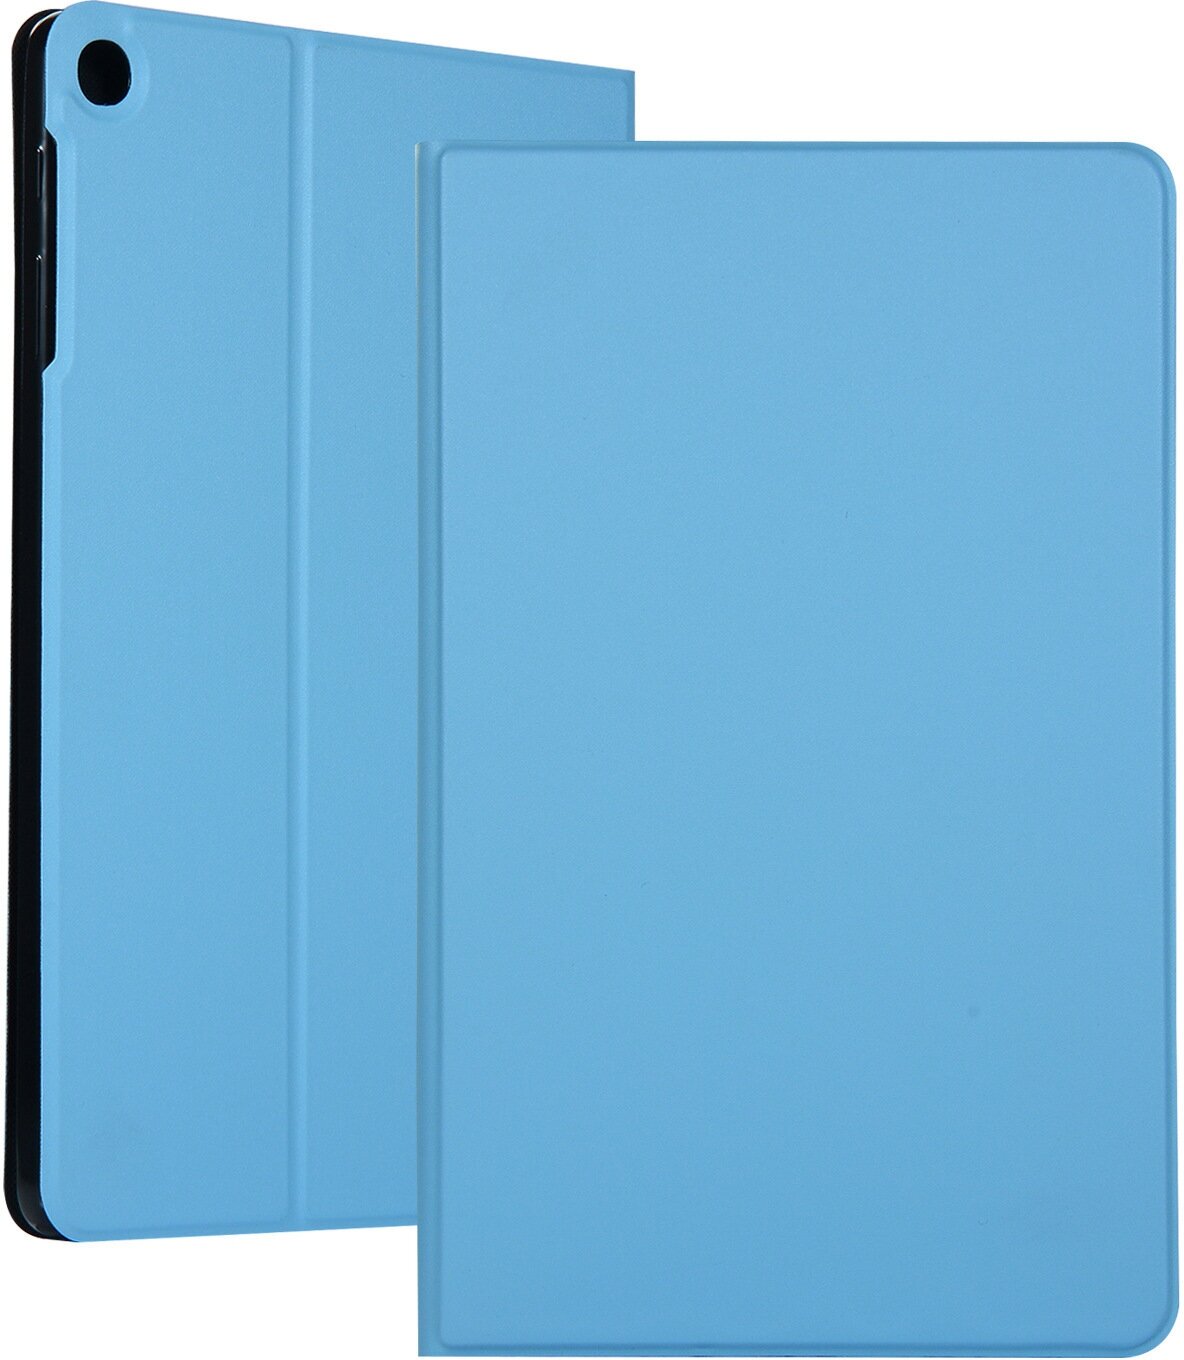 Чехол для планшета Huawei MatePad SE 10.4 дюйма (AGS5-W09/L09), кожаный, трансформируется в подставку (голубой)